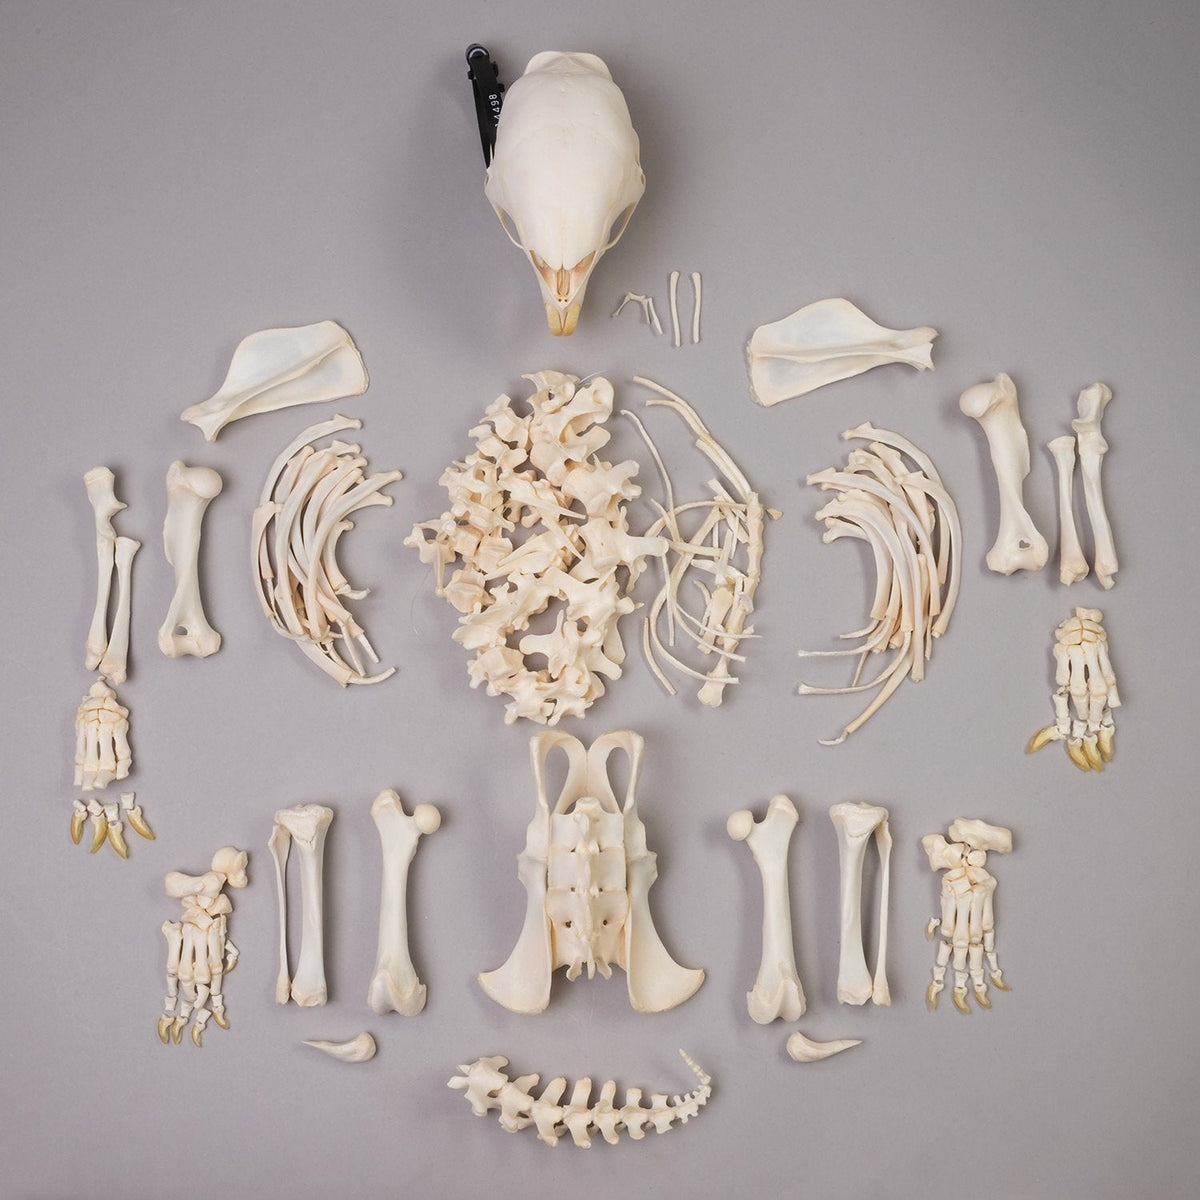 Real African Porcupine Skeleton — Skulls Unlimited International, Inc.